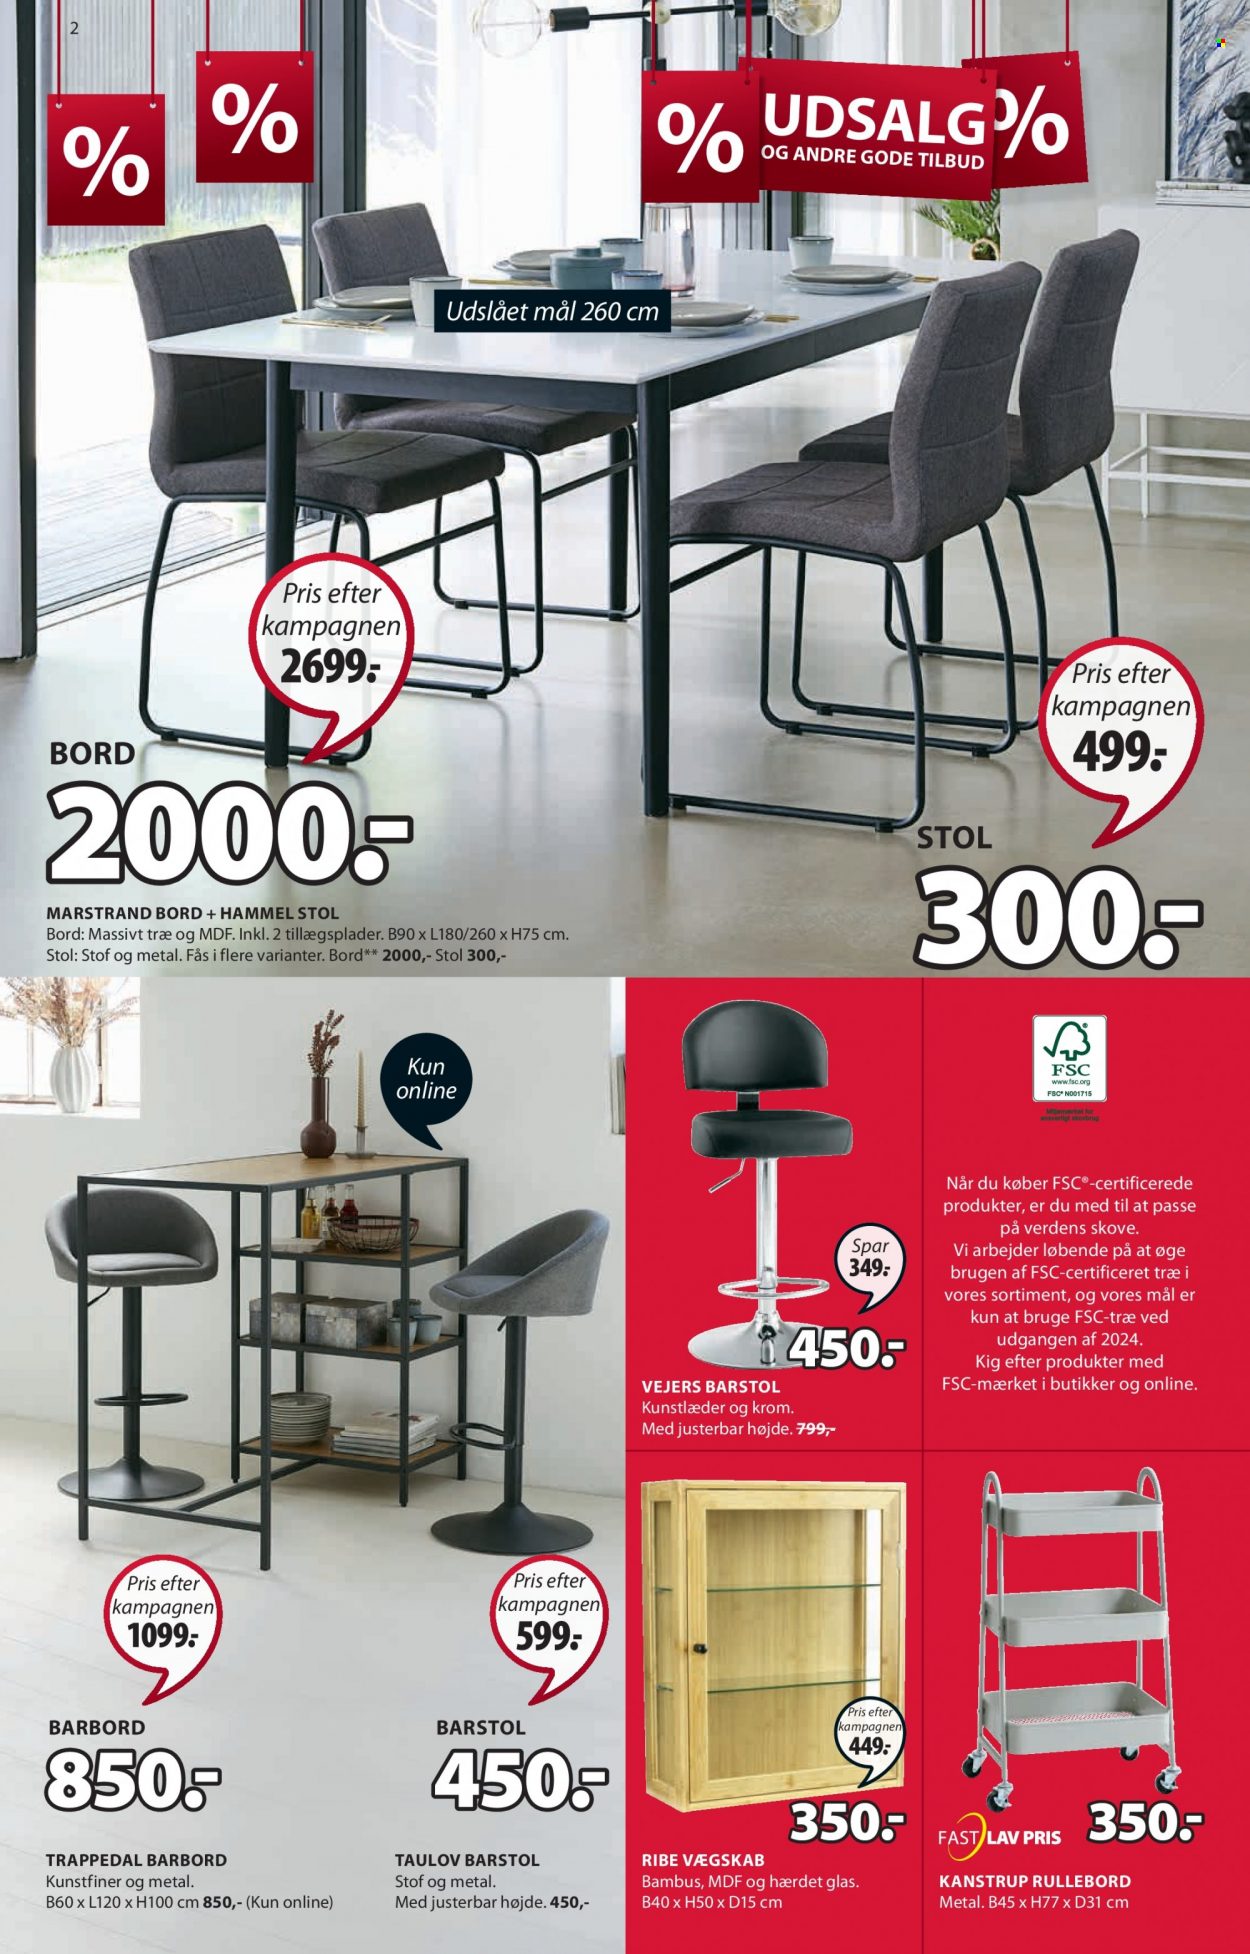 thumbnail - JYSK tilbud  - 14.1.2022 - 23.1.2022 - tilbudsprodukter - bord, stol. Side 2.